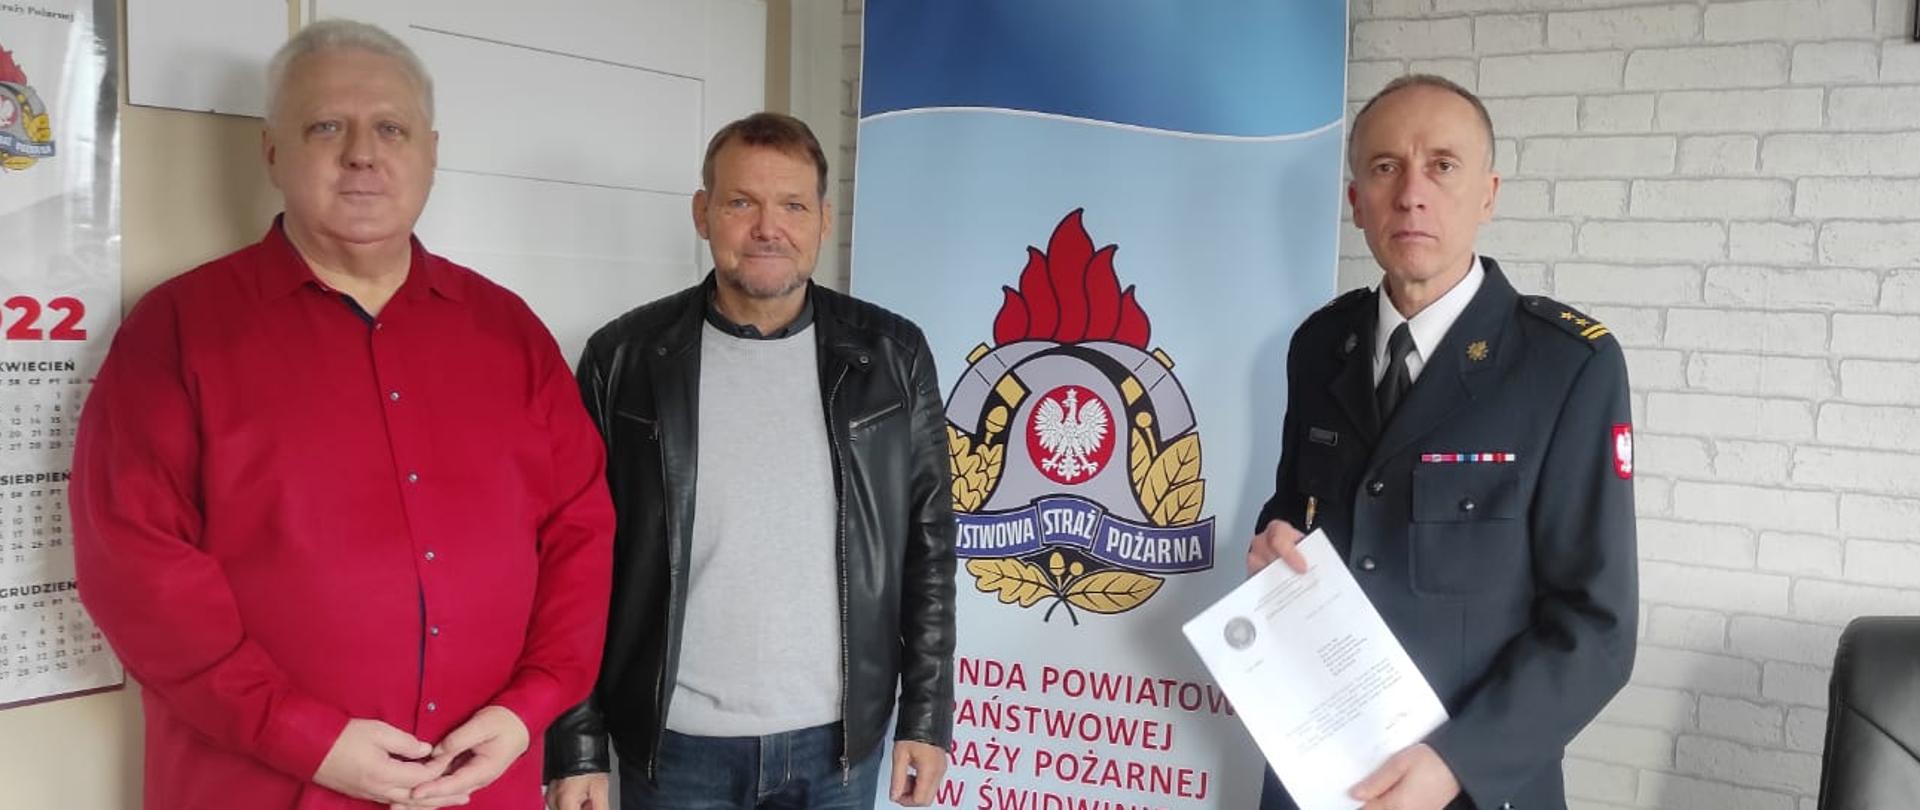 Zdjęcie przedstawia Spotkanie z Zarządem Koła Emerytów i Rencistów Pożarnictwa RP w Świdwinie w gabinecie Komendanta Powiatowego PSP w Świdwinie. Na zdjęciu znajduje si e trzech mężczyzn.